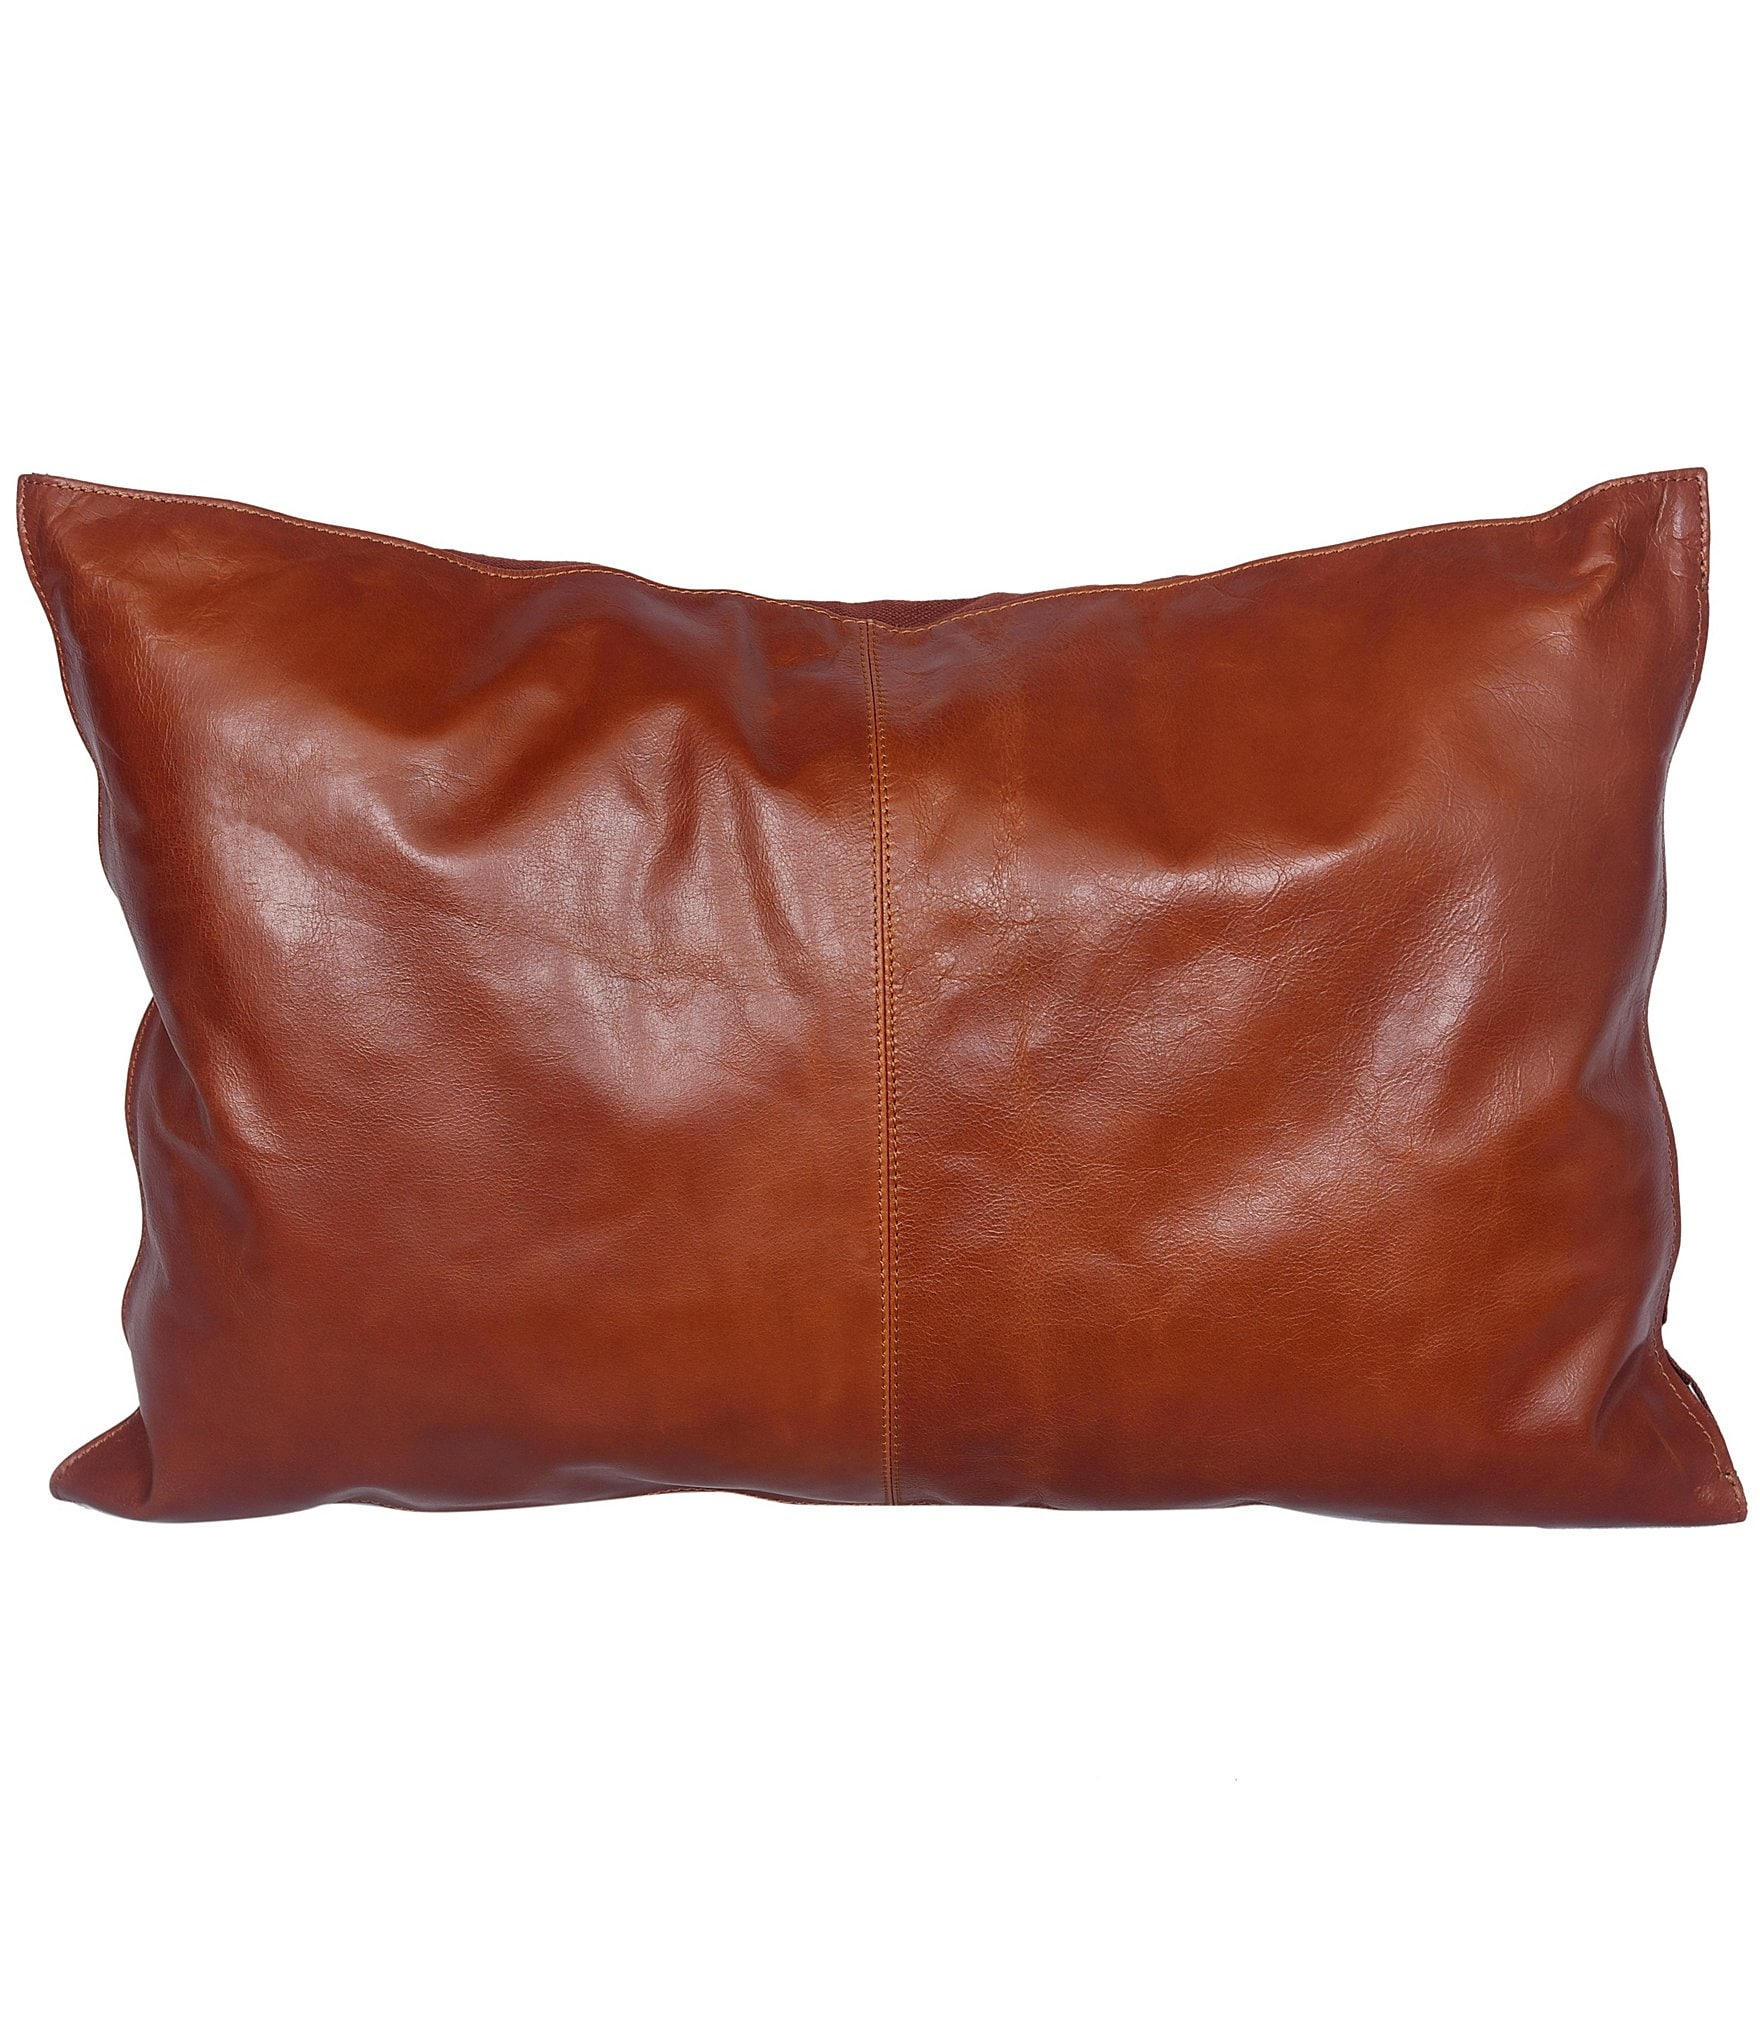 Hiend Accents Buckskin Leather Lumbar Pillow Dillards